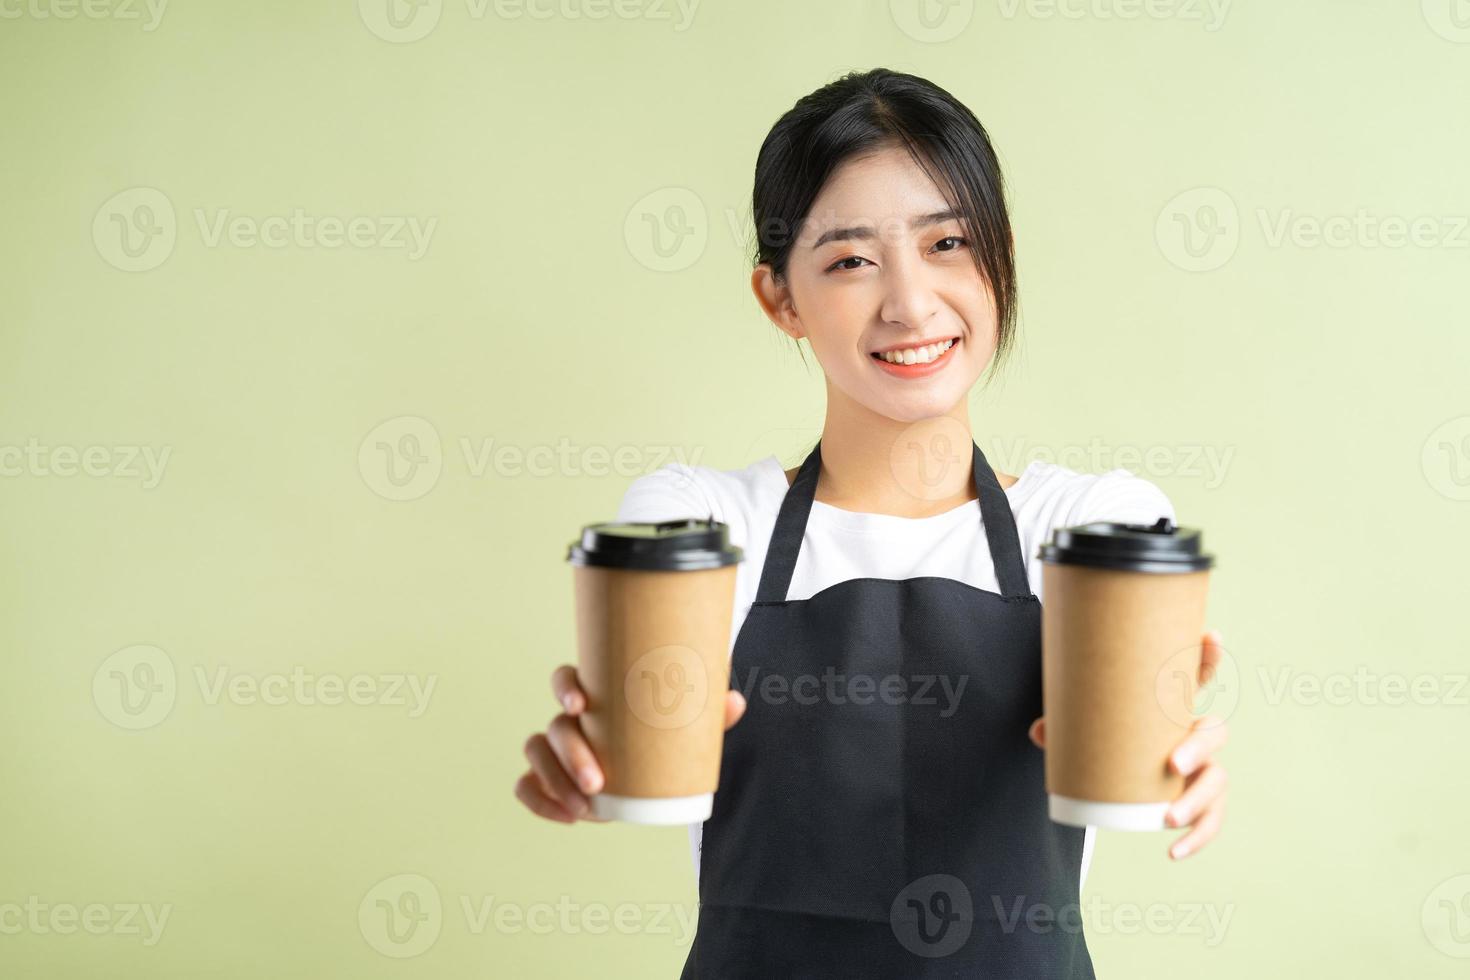 asiatische kellnerin mit zwei tassen kaffee foto